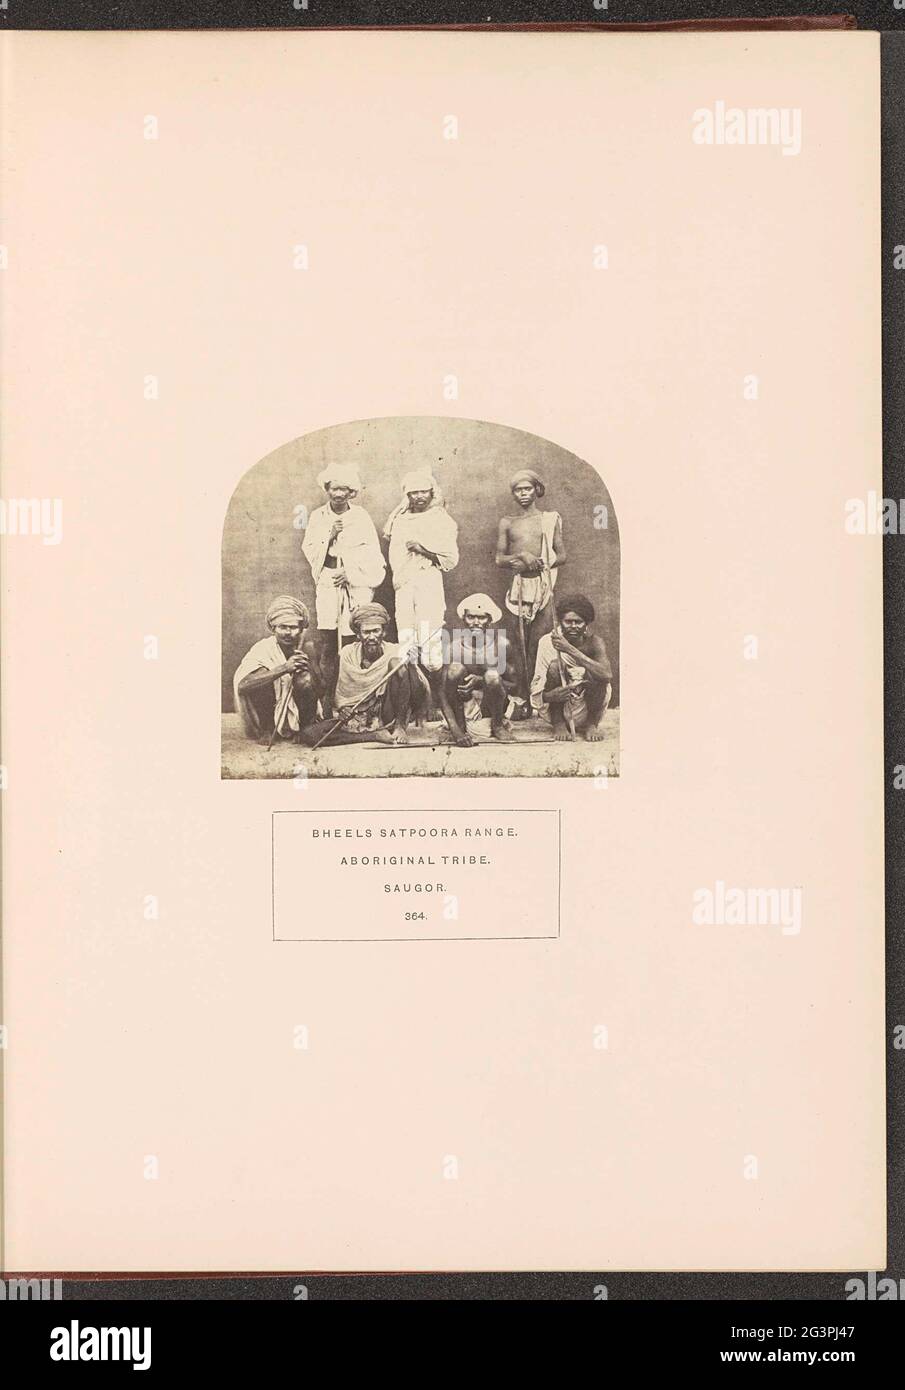 Porträt einer Gruppe von bhil-Leuten aus den Satorpen-Bergen; Sheeps Satpoora Range. Stamm Der Aborigines. Saugor. . Stockfoto